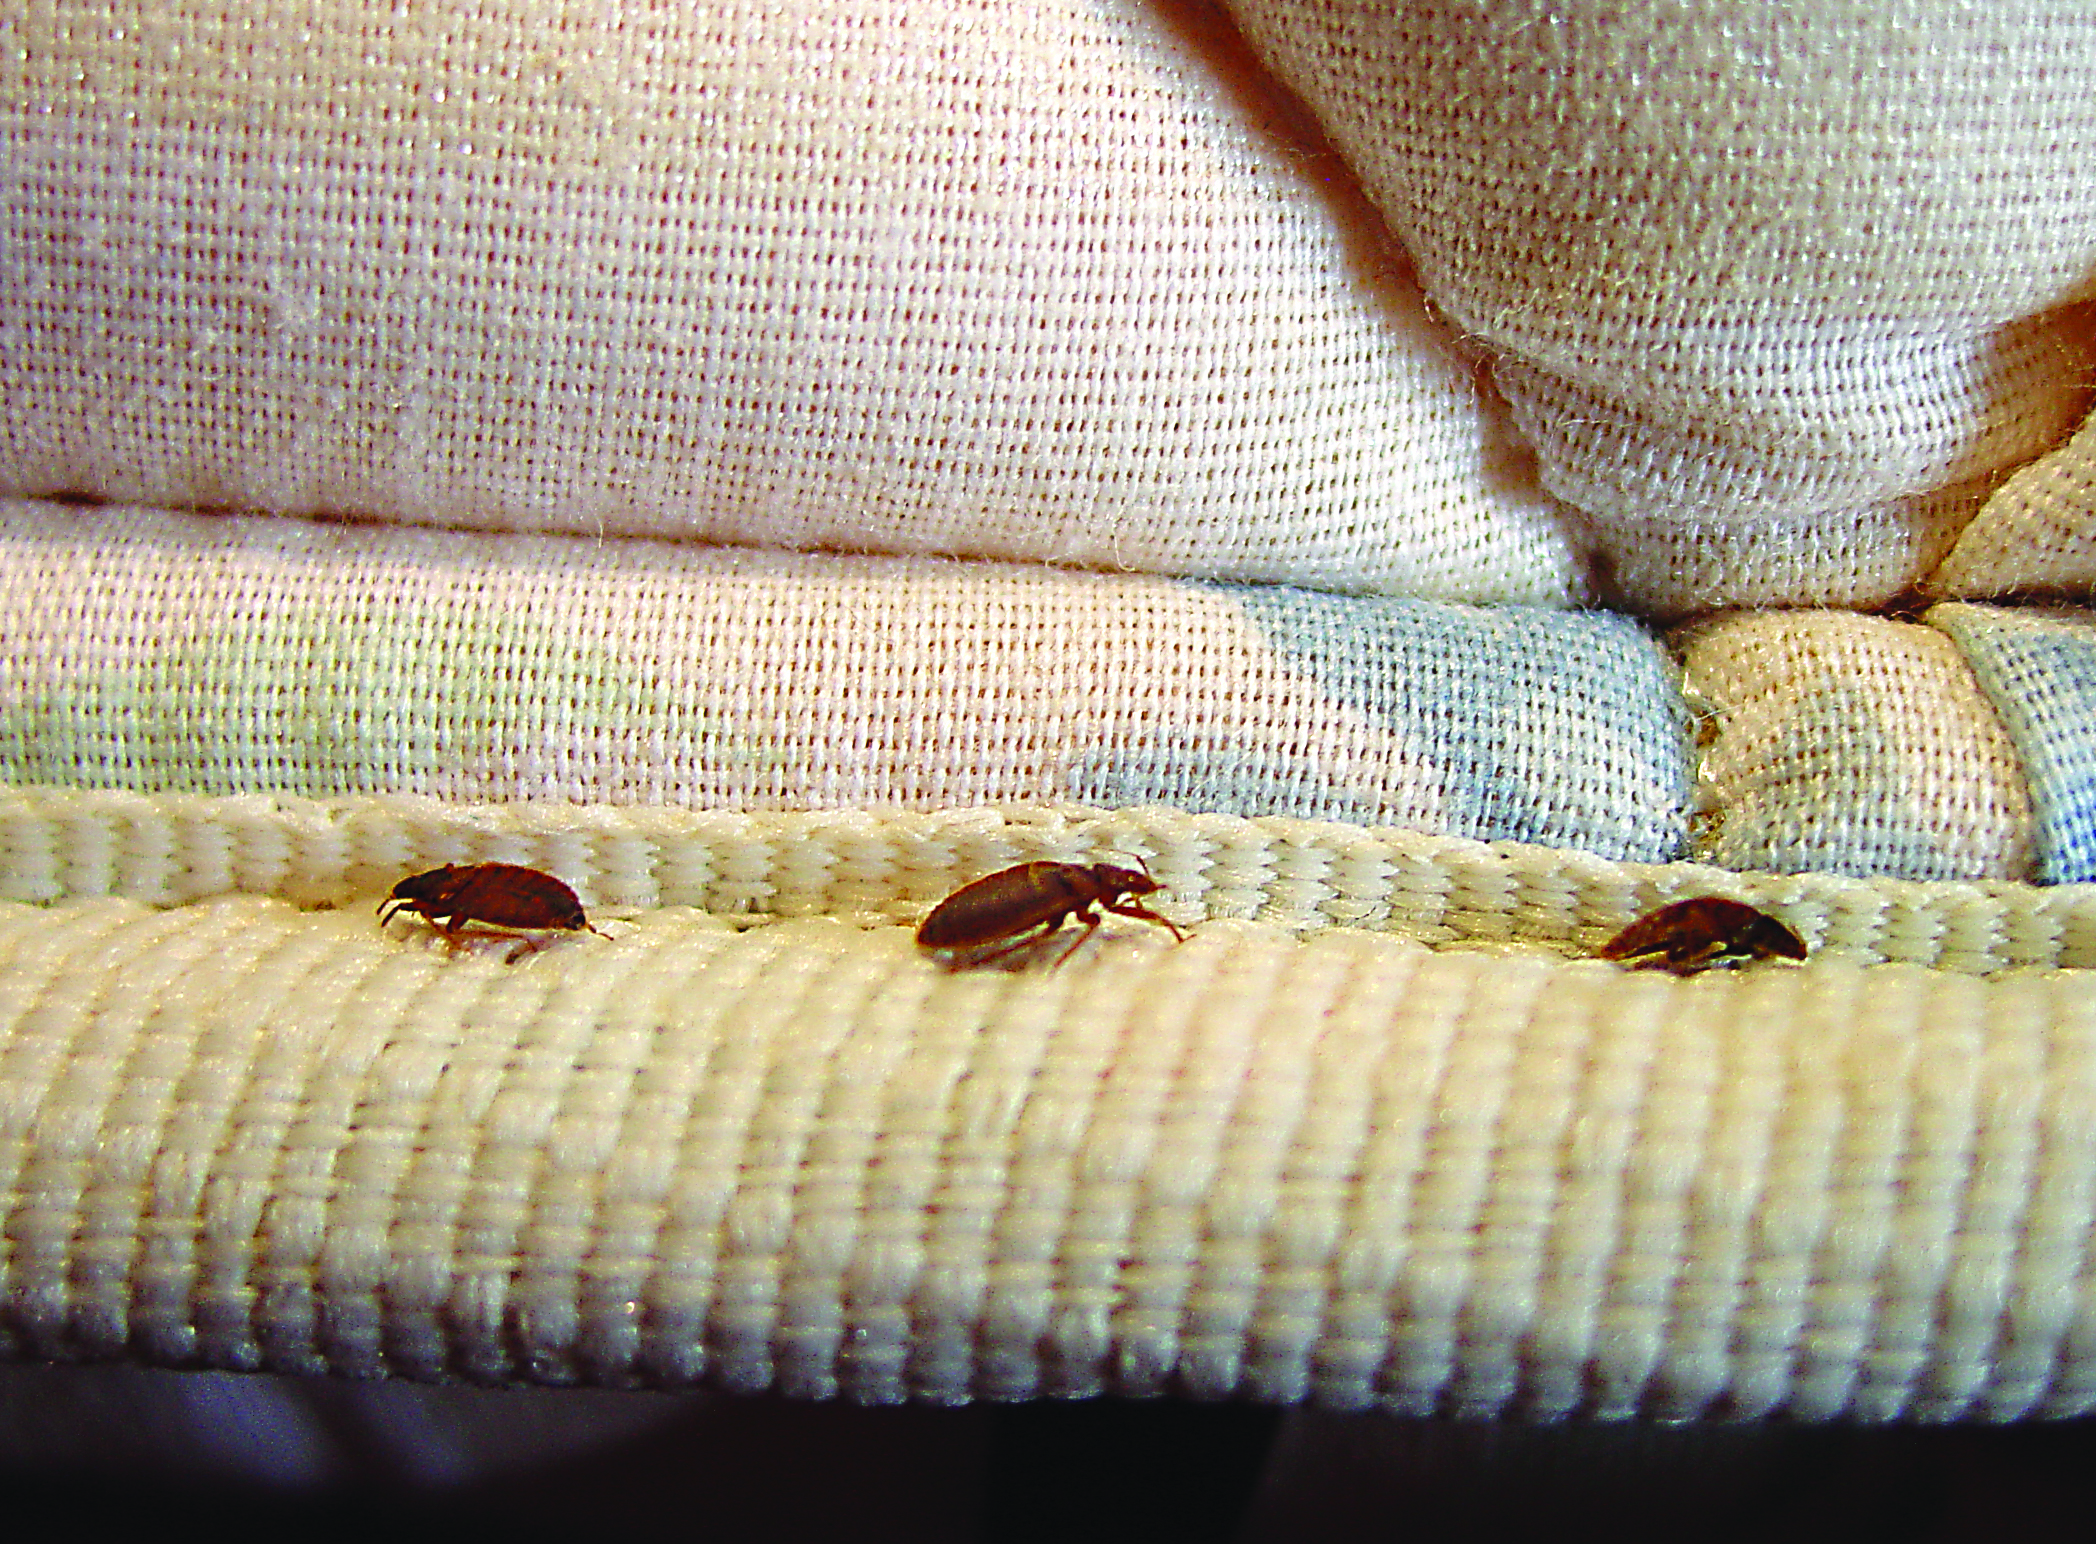 bed bug prrof sheet for air mattress